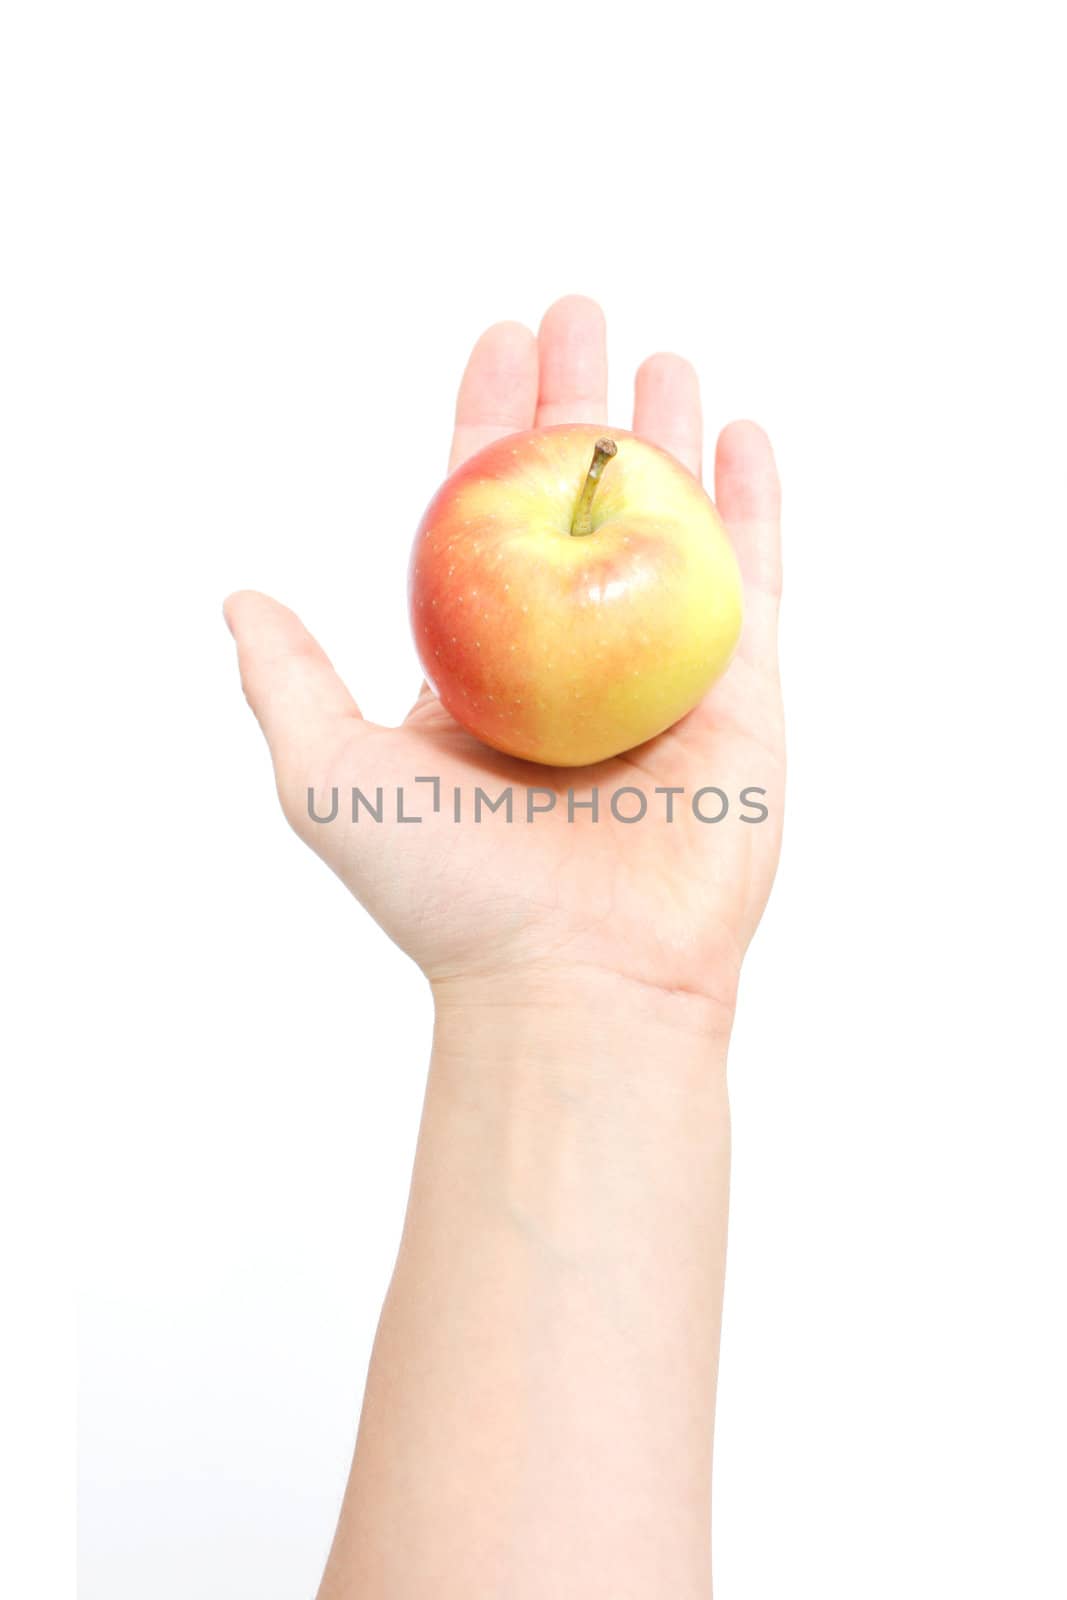 Handing apple